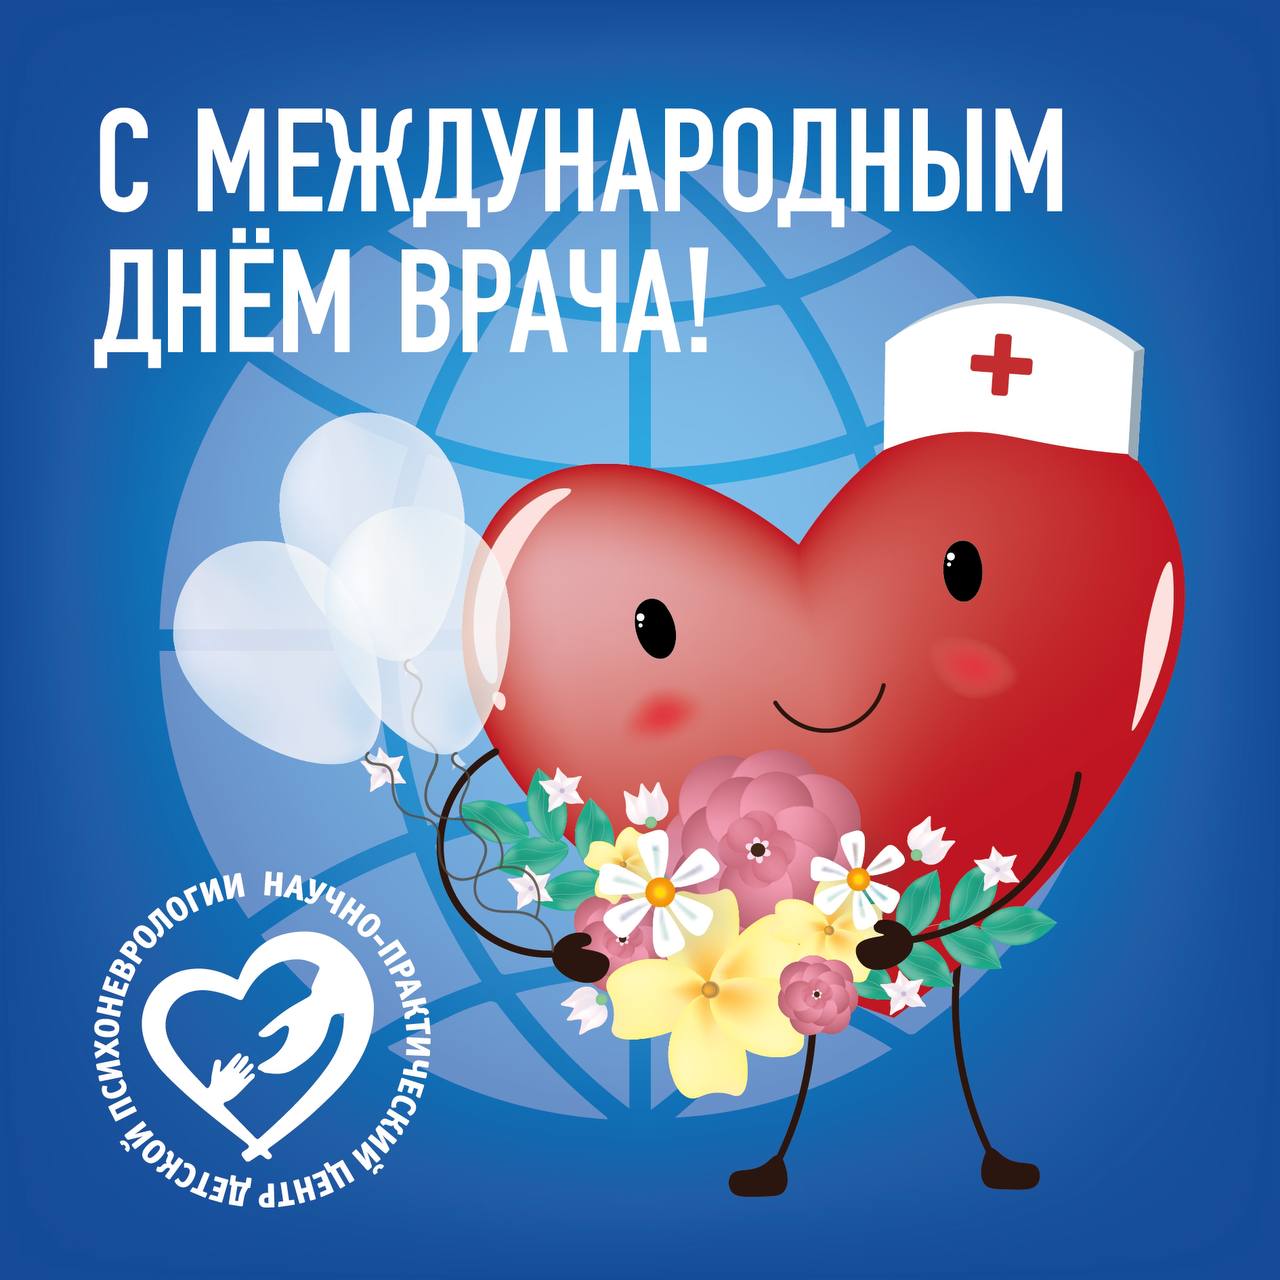  Сегодня, в первый понедельник октября, мир отмечает Международный день врача!